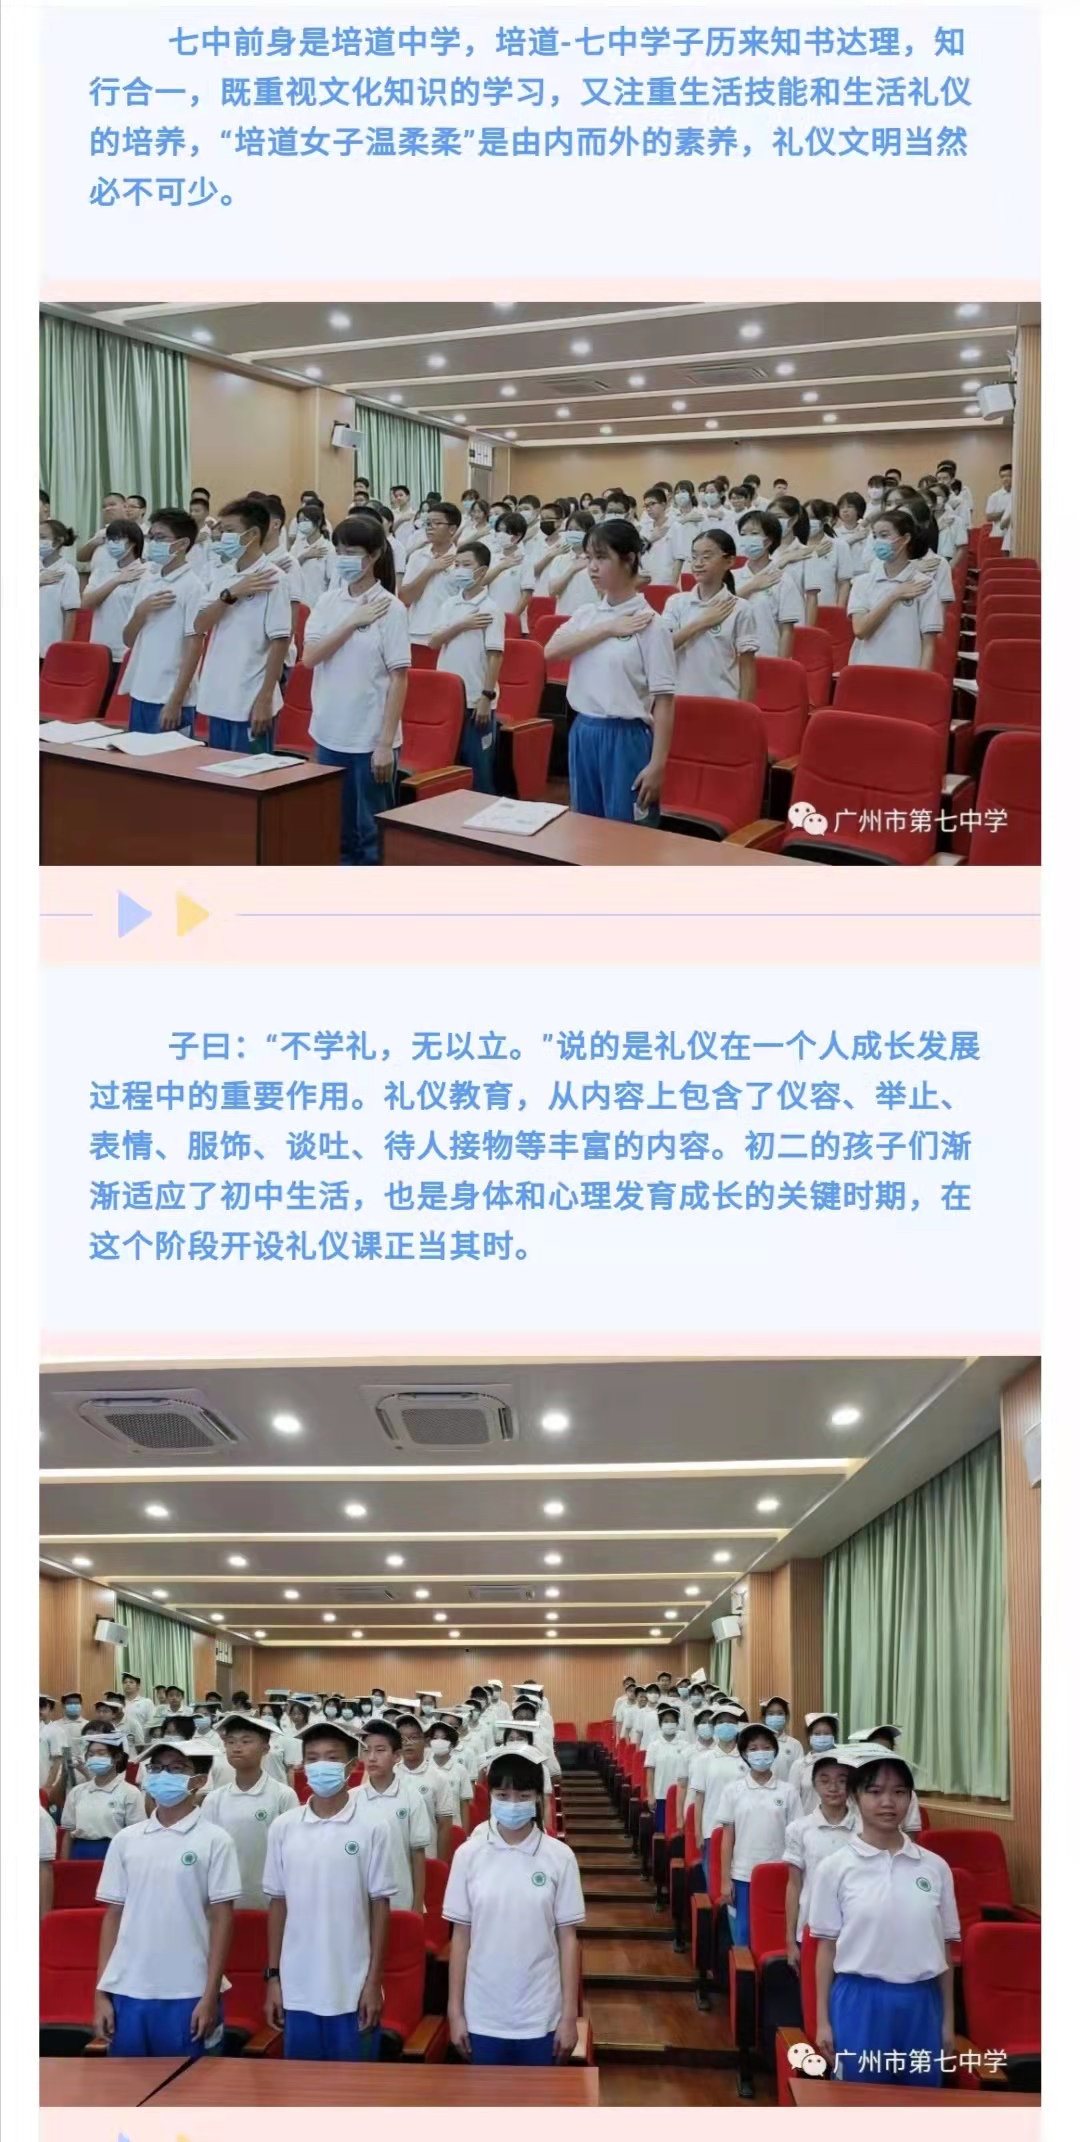 广州市第七中学 - 初二特色课程之礼仪课